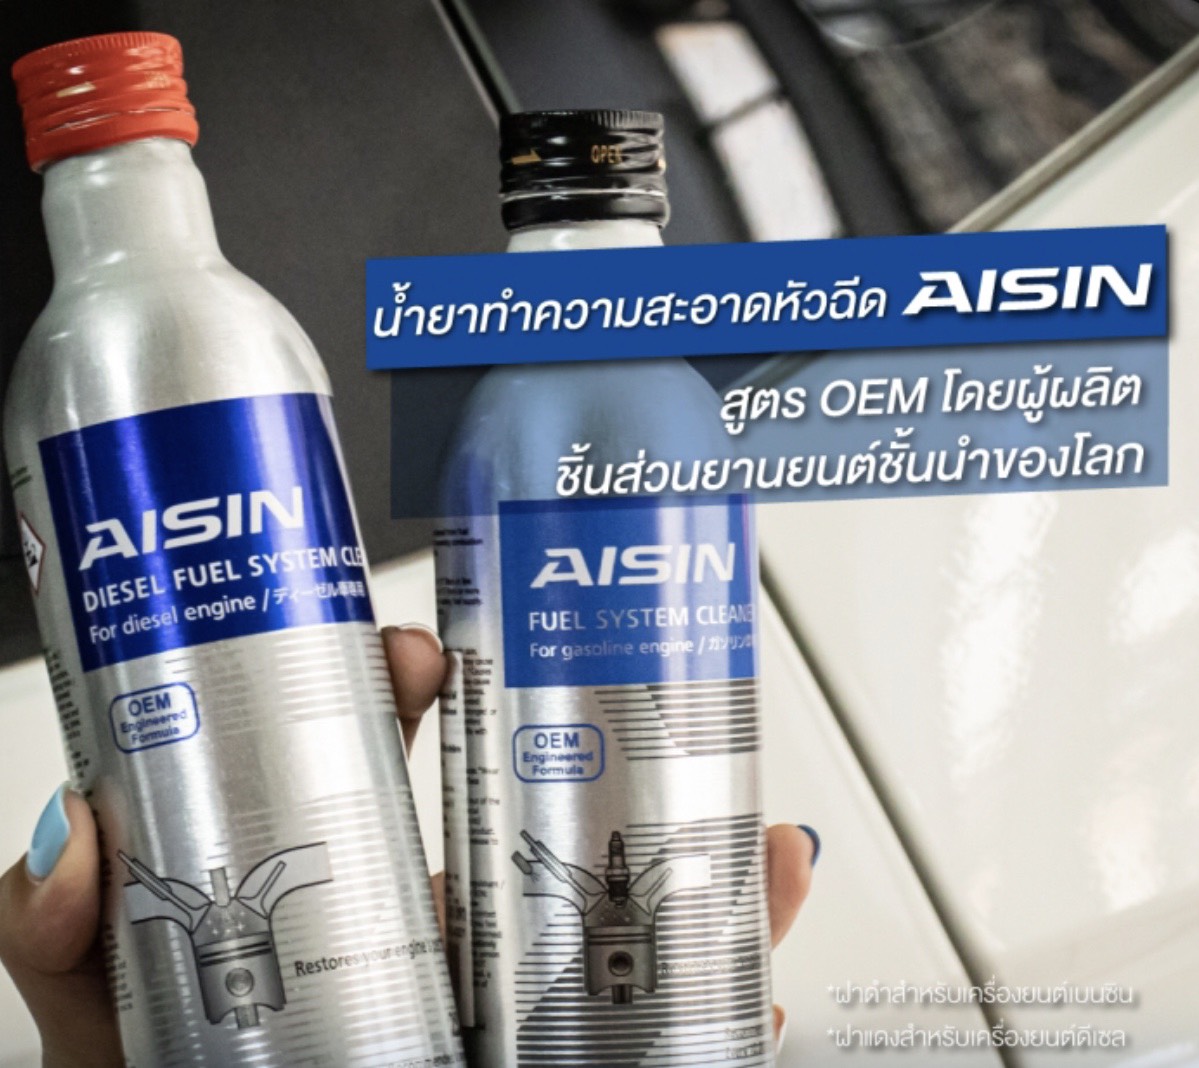 มุมมองเพิ่มเติมของสินค้า น้ำยาล้างหัวฉีด ดีเซล ไอชิน AISIN 250ml. สำหรับเครื่องยนต์ ดีเซล โดยเฉพาะ เครื่องยนต์คอมมอนเรล นำเข้าจาก Japan